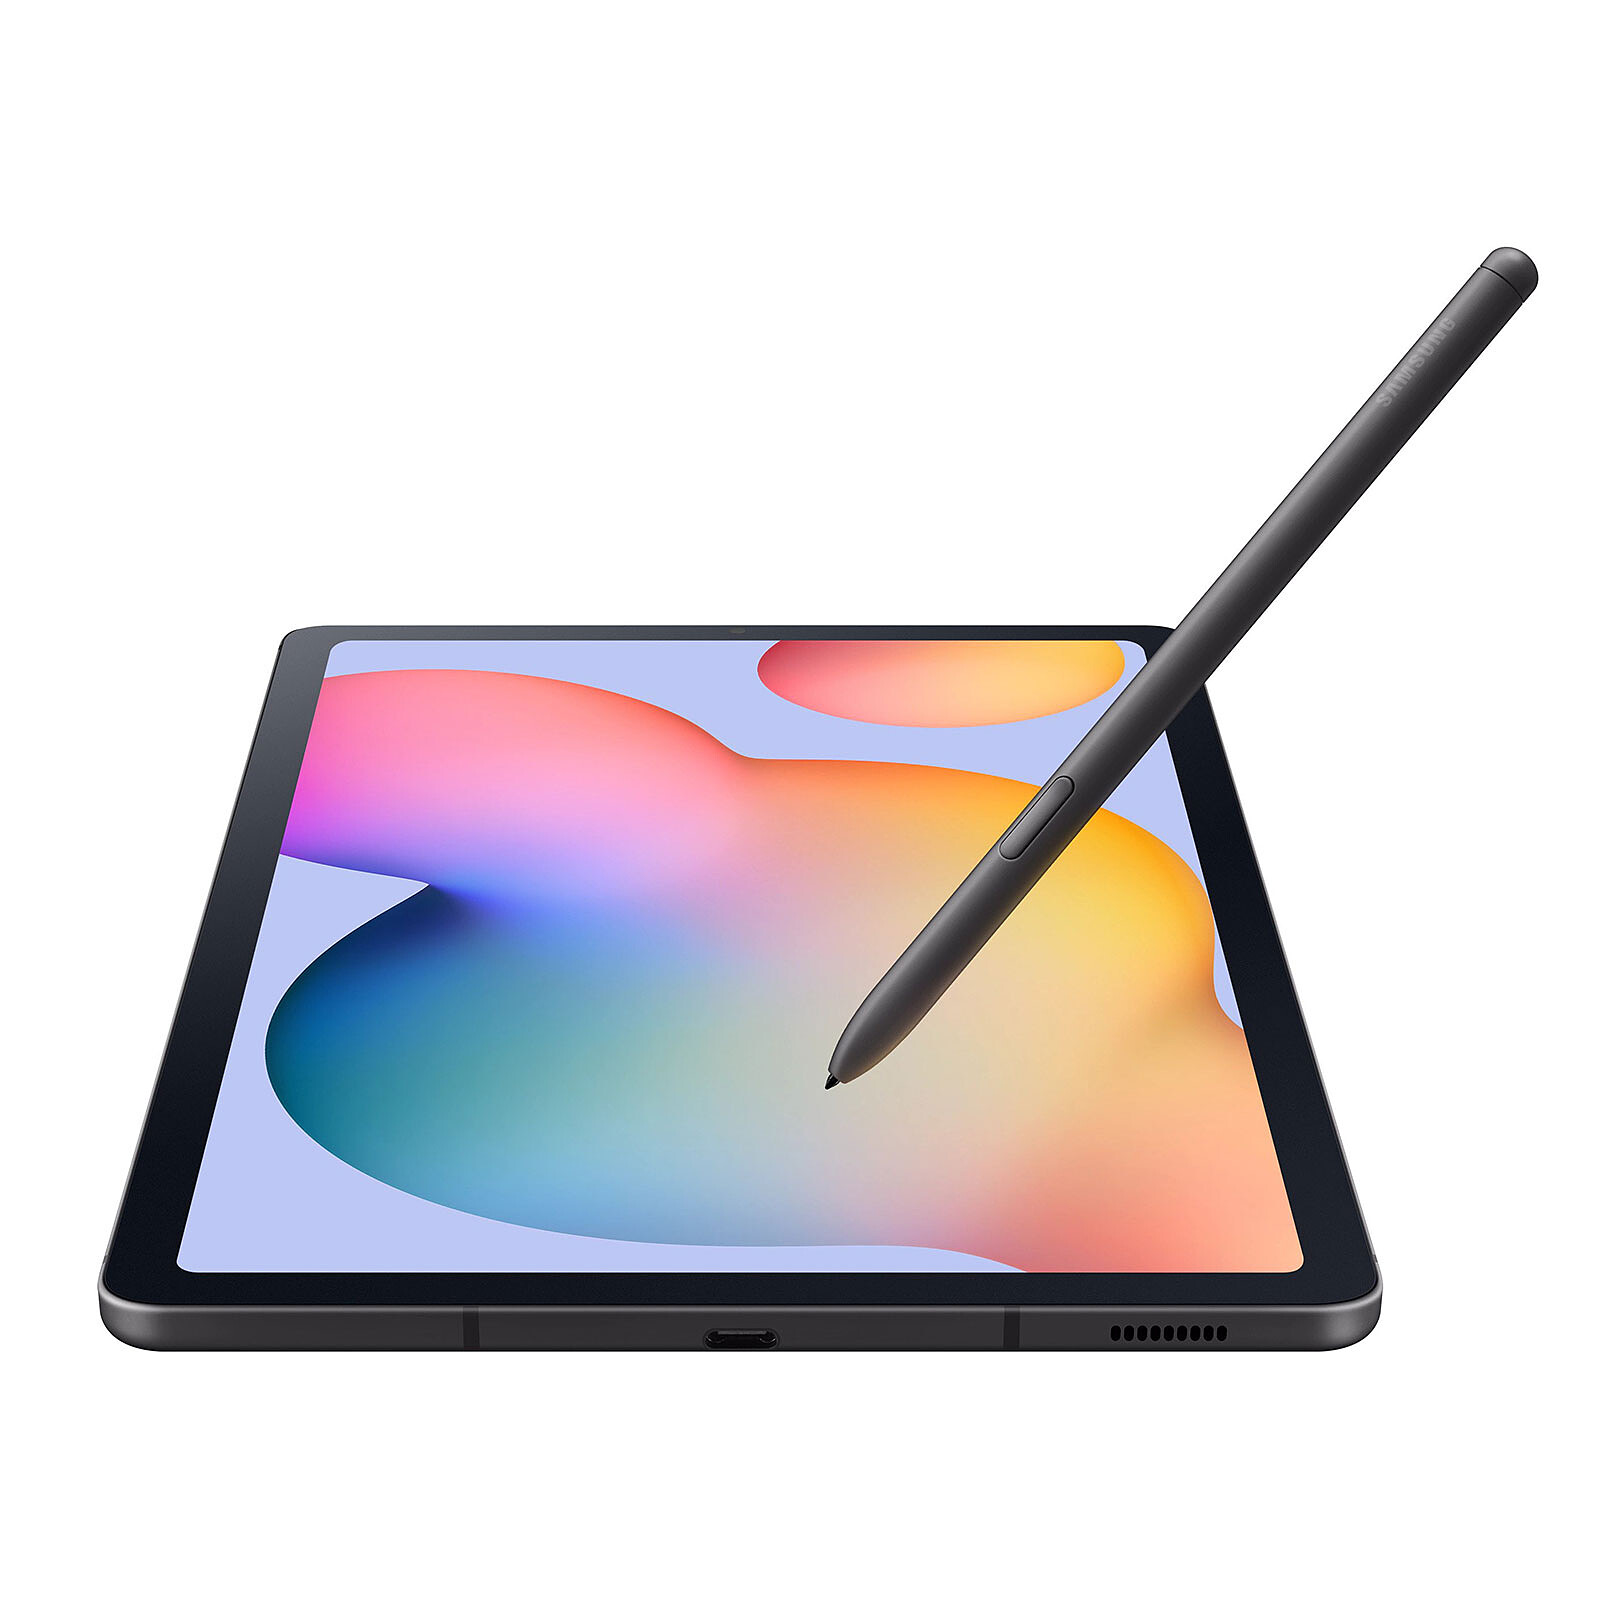 Samsung Galaxy Tab A 8.0 2019 con S Pen: características, ficha técnica y  precio